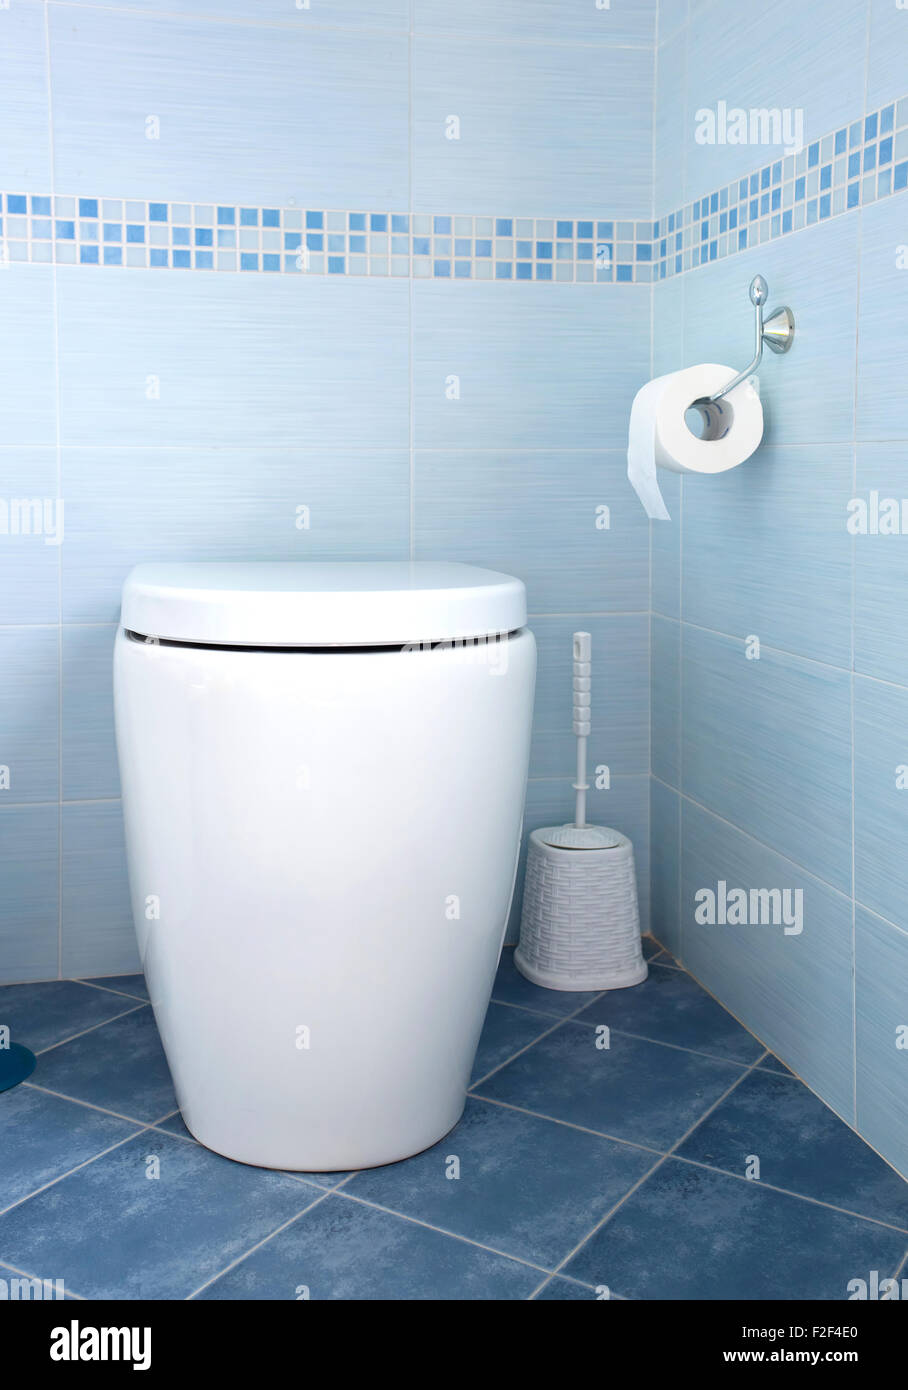 Blanc moderne de la cuvette des toilettes dans salle de bains bleue Banque D'Images